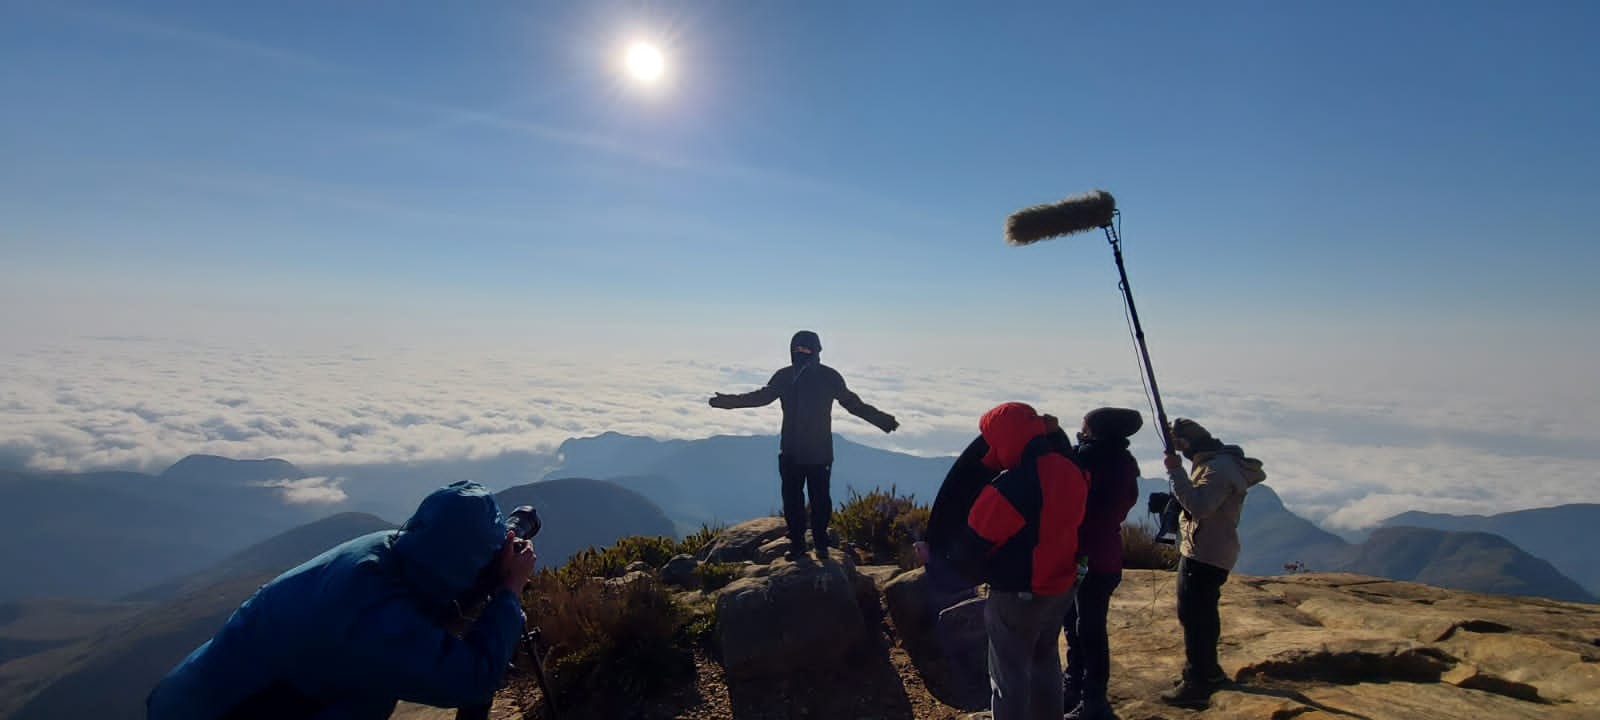 Equipe do Globo Repórter sobe o Pico da Bandeira, o 3º mais alto do Brasil  